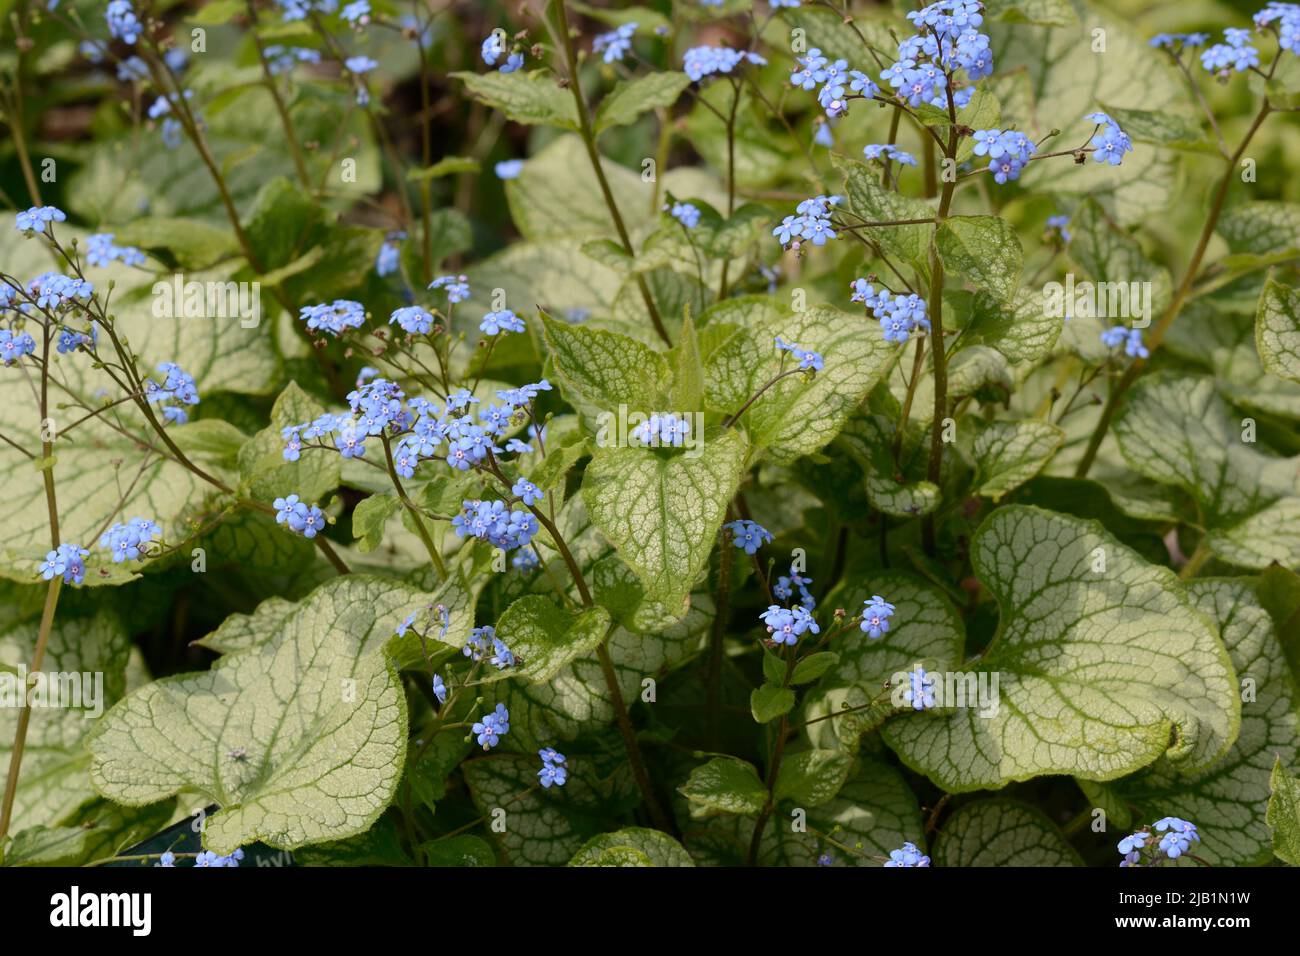 Brummera macrophylla jack Frost Mucha de flores azules pequeñas en forma de corazón follaje con venas verdes Foto de stock